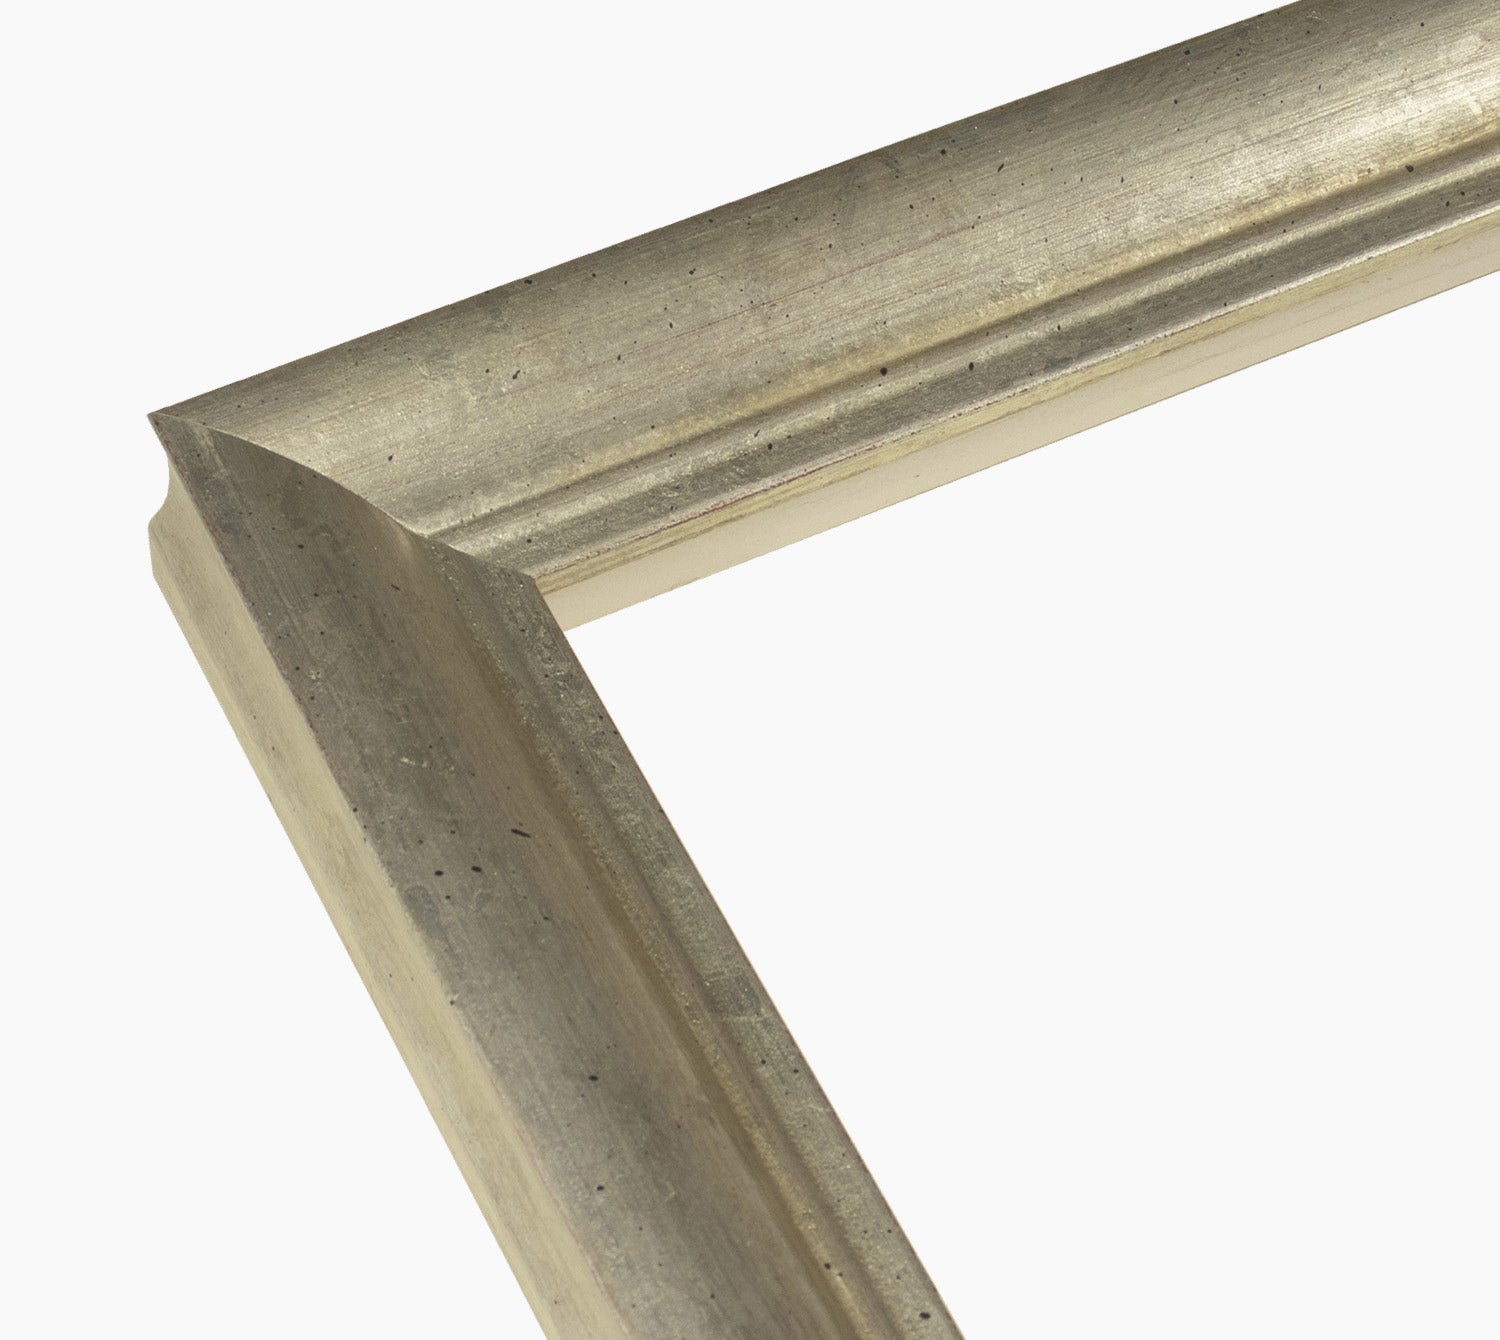 Aste per cornici in legno in foglia argento con profilo misura 45x45 mm  Art. 227.011 – Lombarda cornici s.n.c.